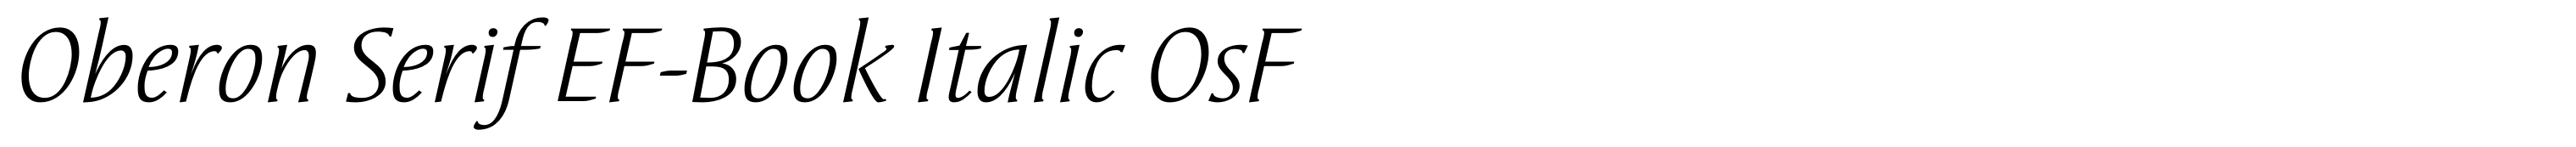 Oberon Serif EF-Book Italic OsF